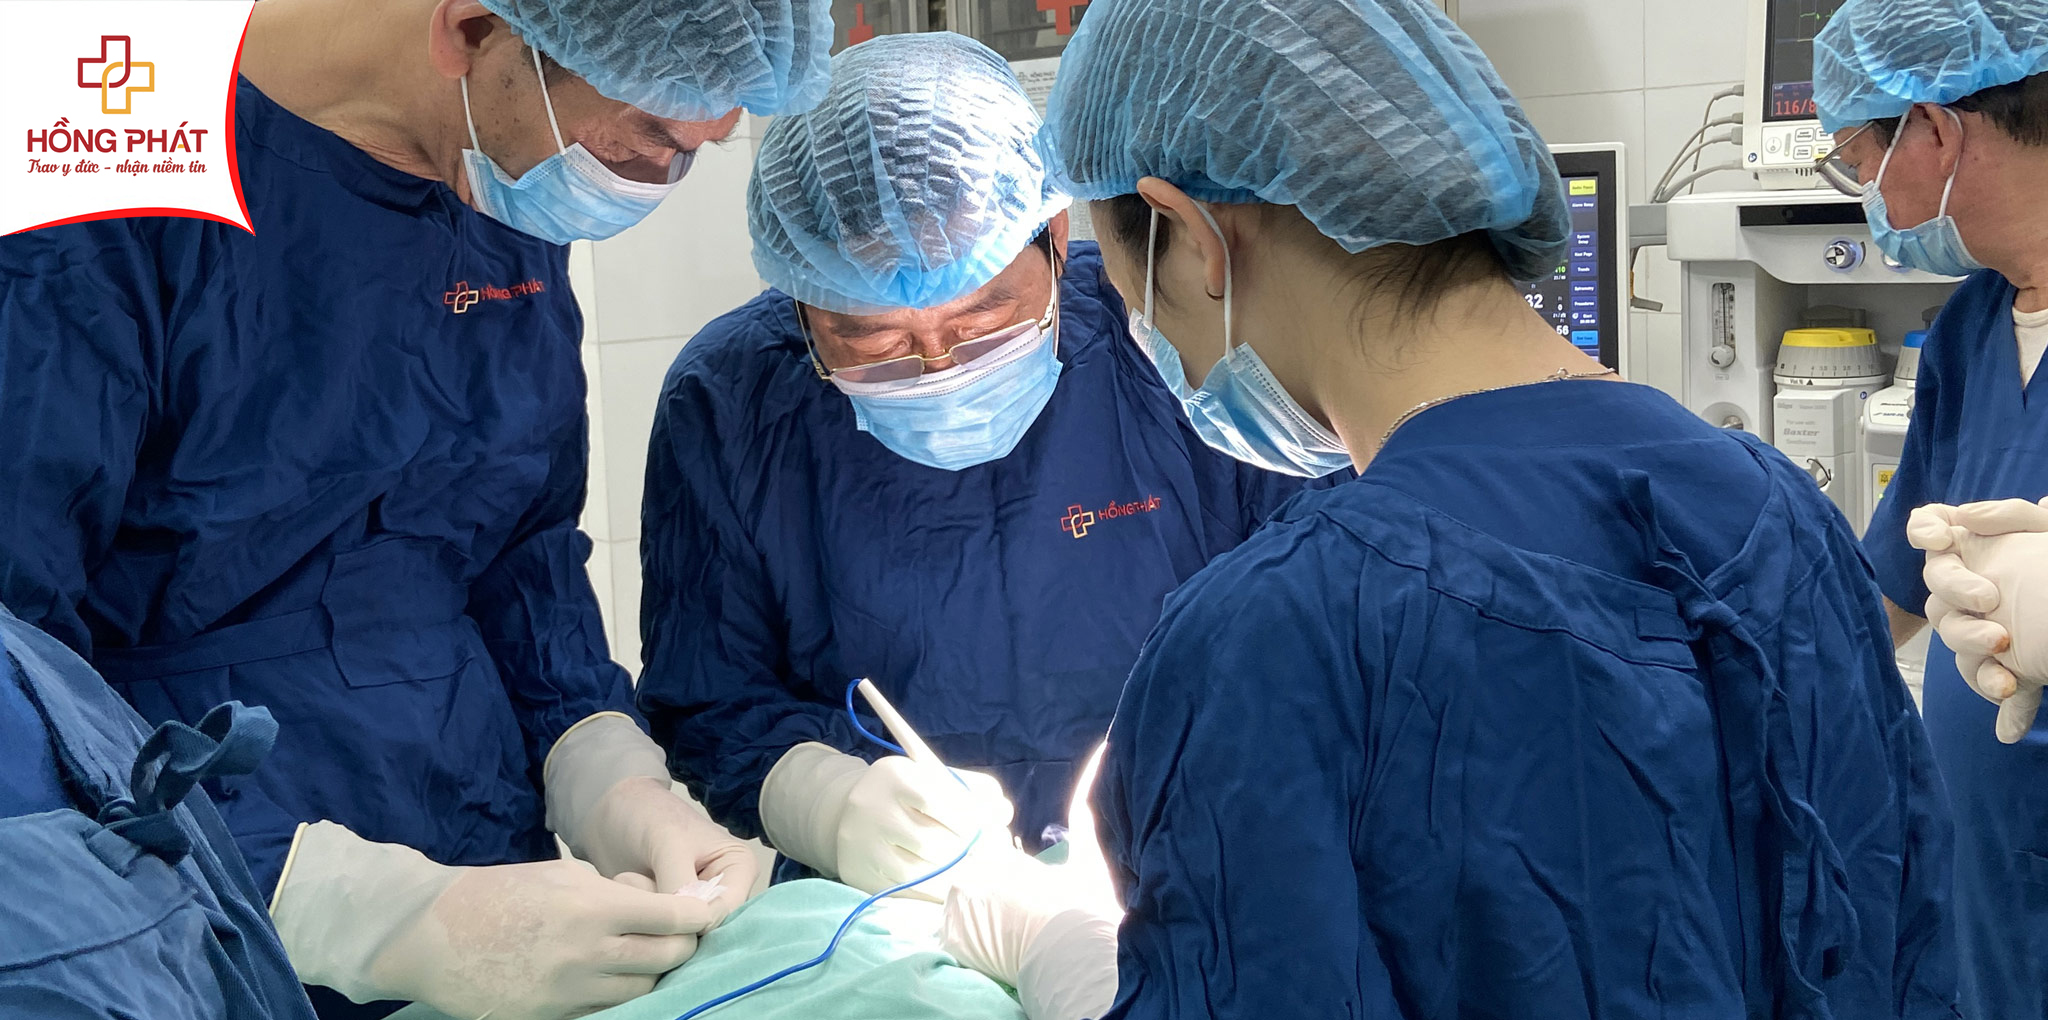 Phẫu thuật tuyến giáp tại Bệnh viện Đa khoa Hồng Phát